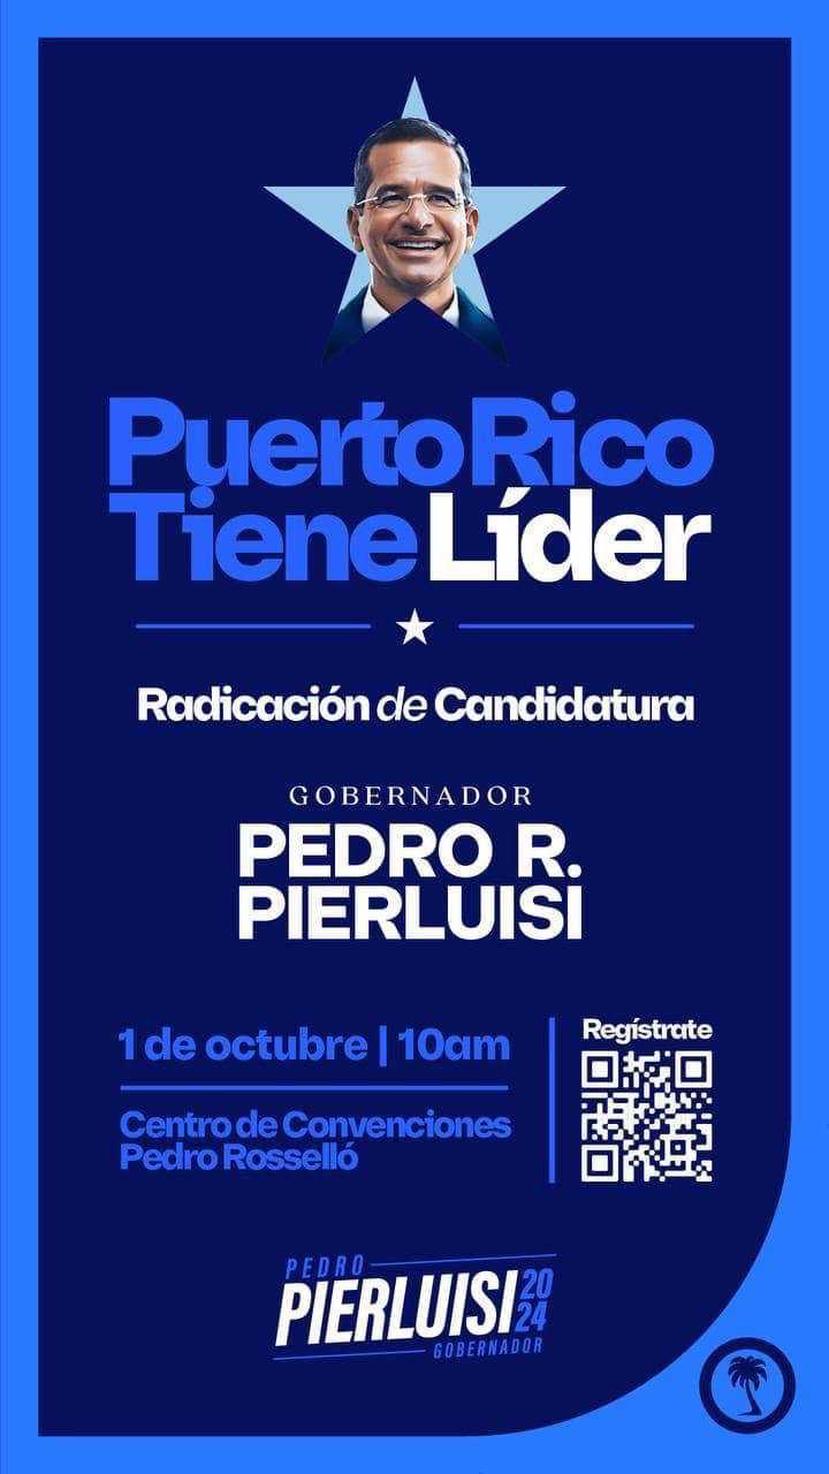 Invitación para el evento que el gobernador Pedro Pierluisi realizará el próximo 1 de octubre para radicar su candidatura a la reelección.